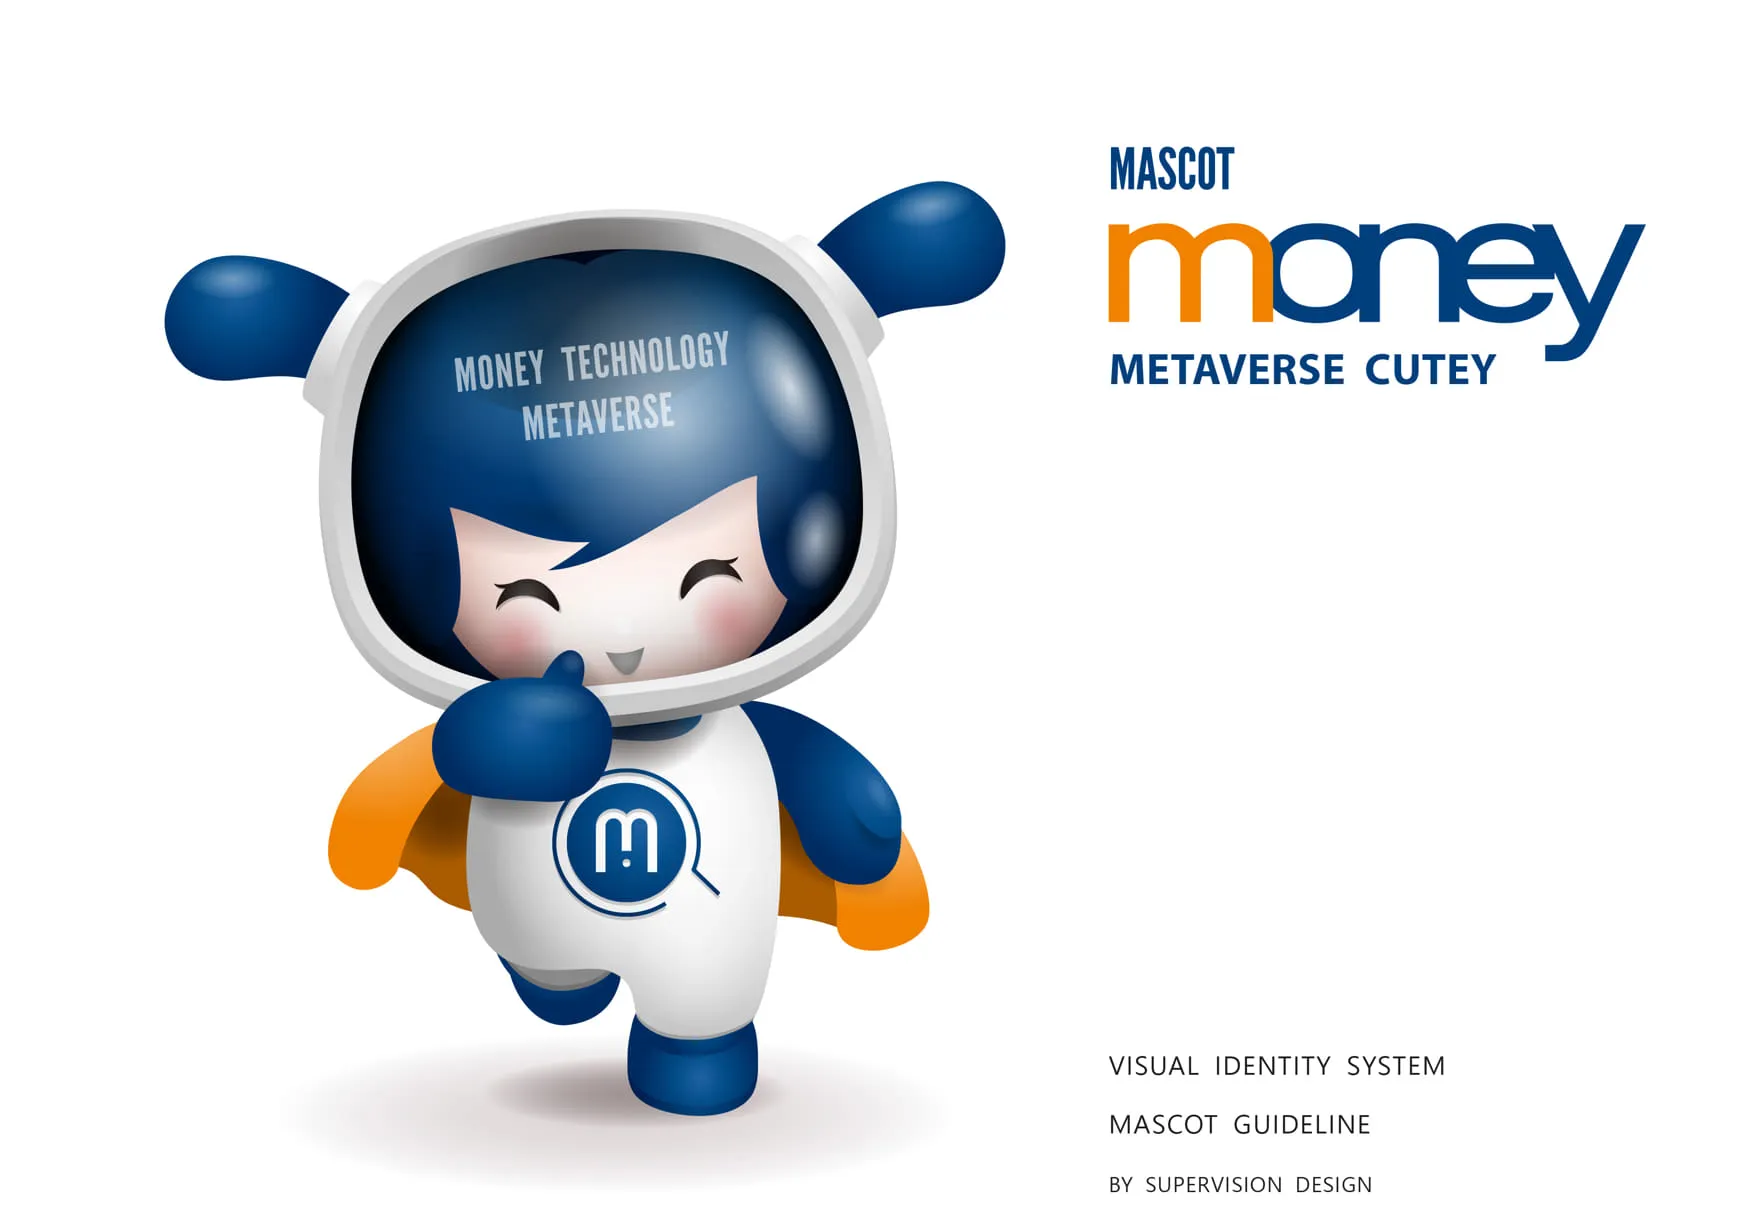 馬尼行動通訊品牌吉祥物設計角色企劃 Mascot design